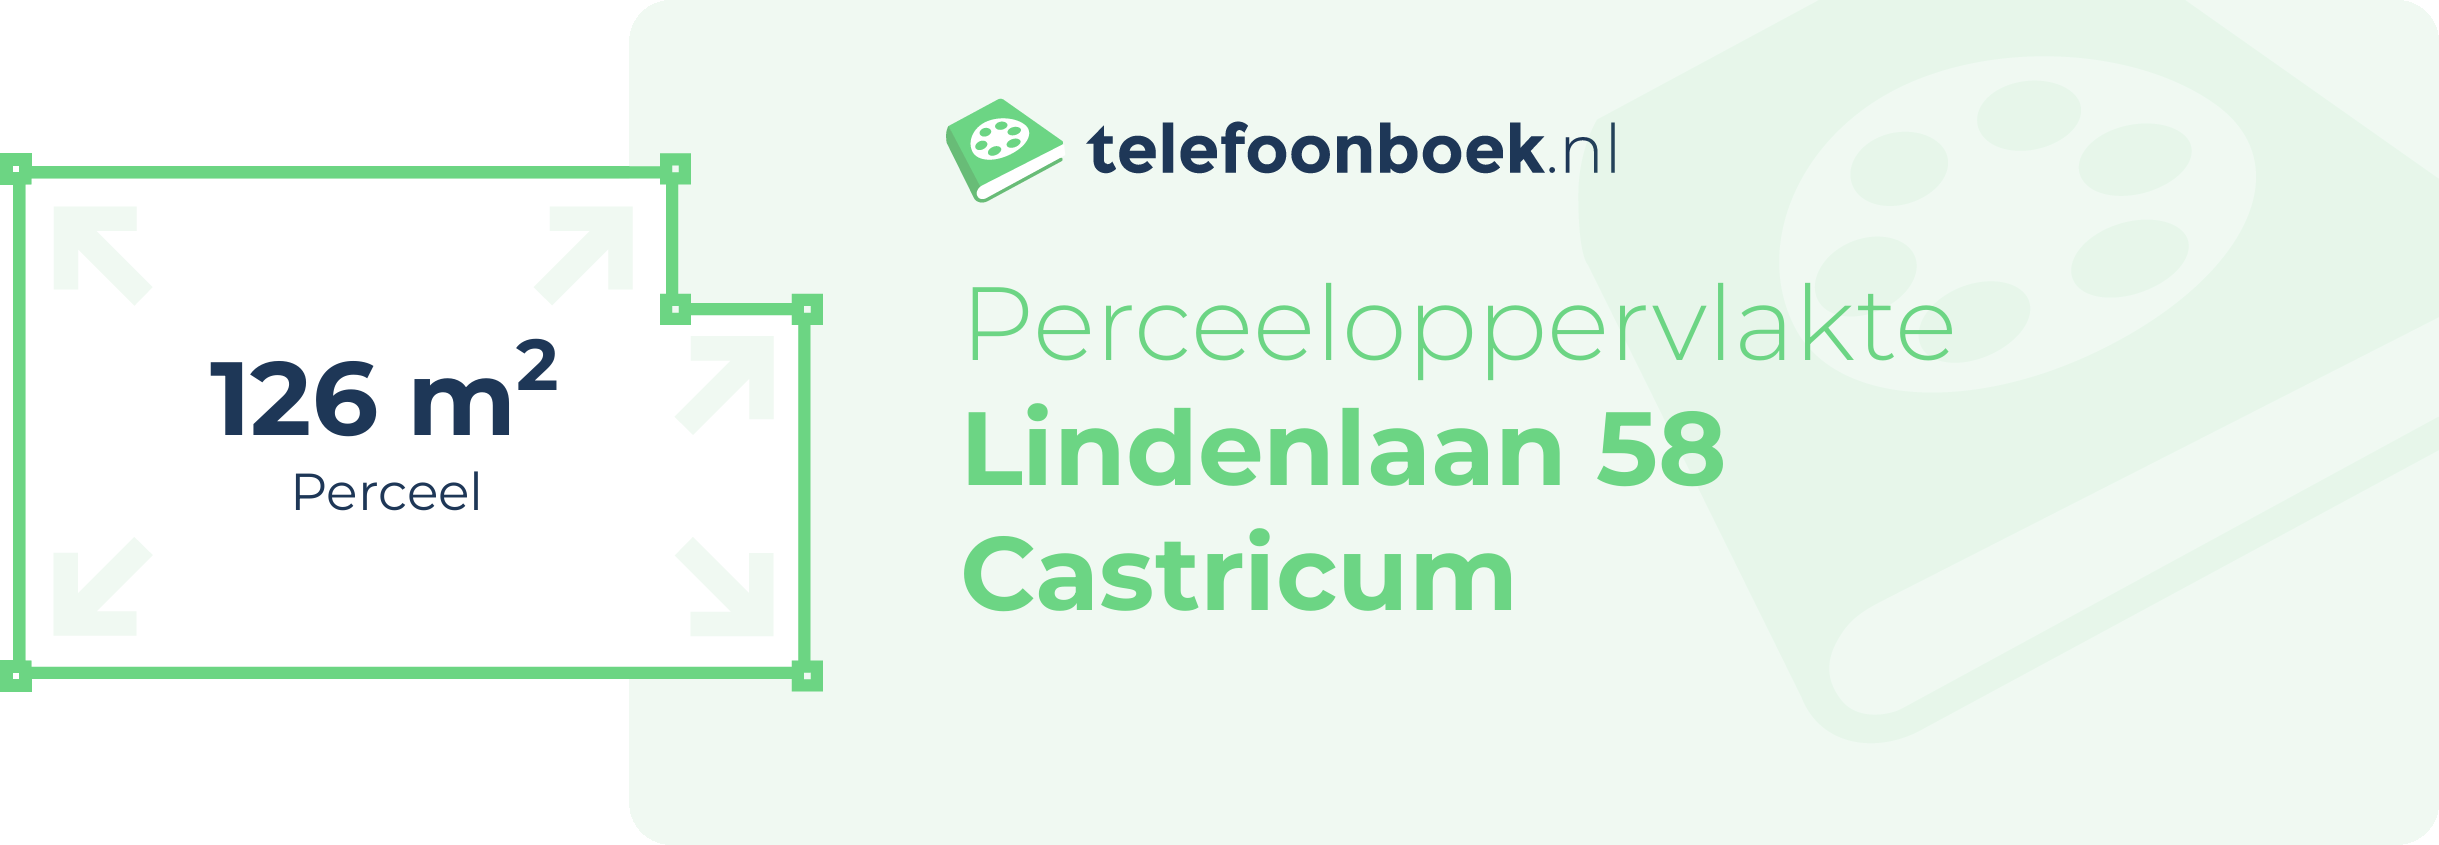 Perceeloppervlakte Lindenlaan 58 Castricum